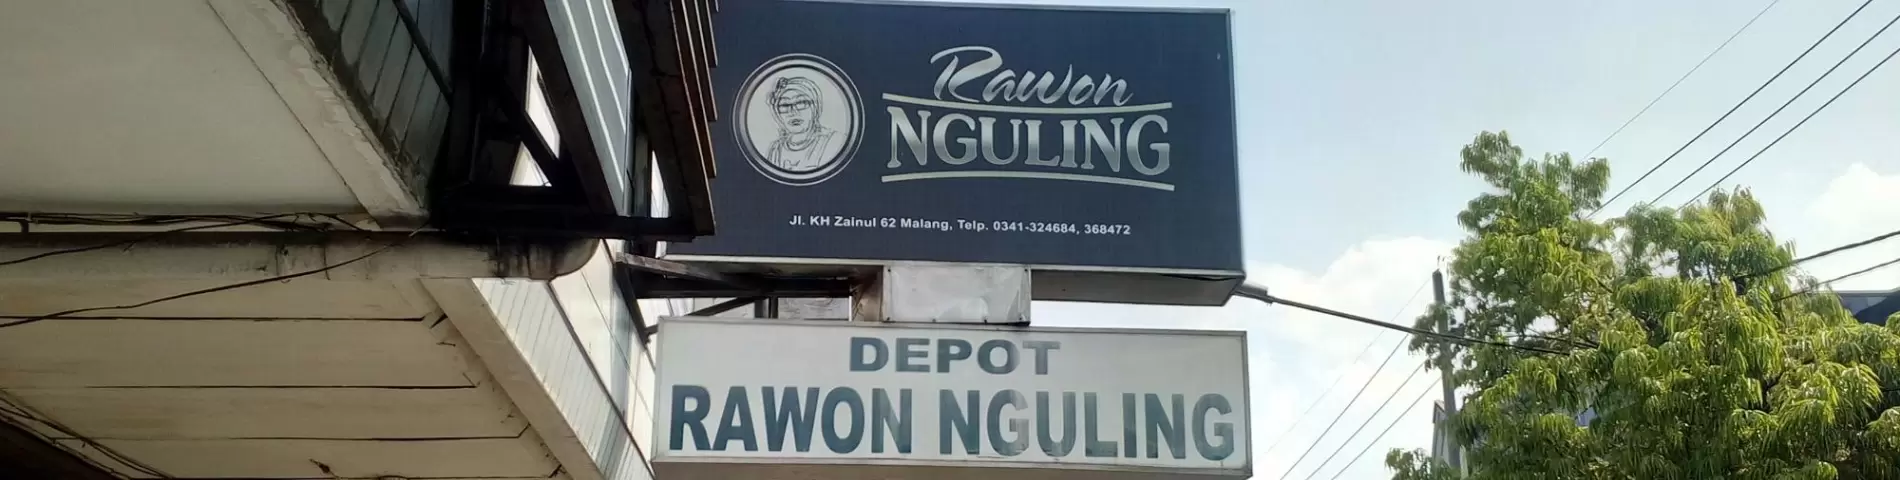 Depot Rawon Nguling